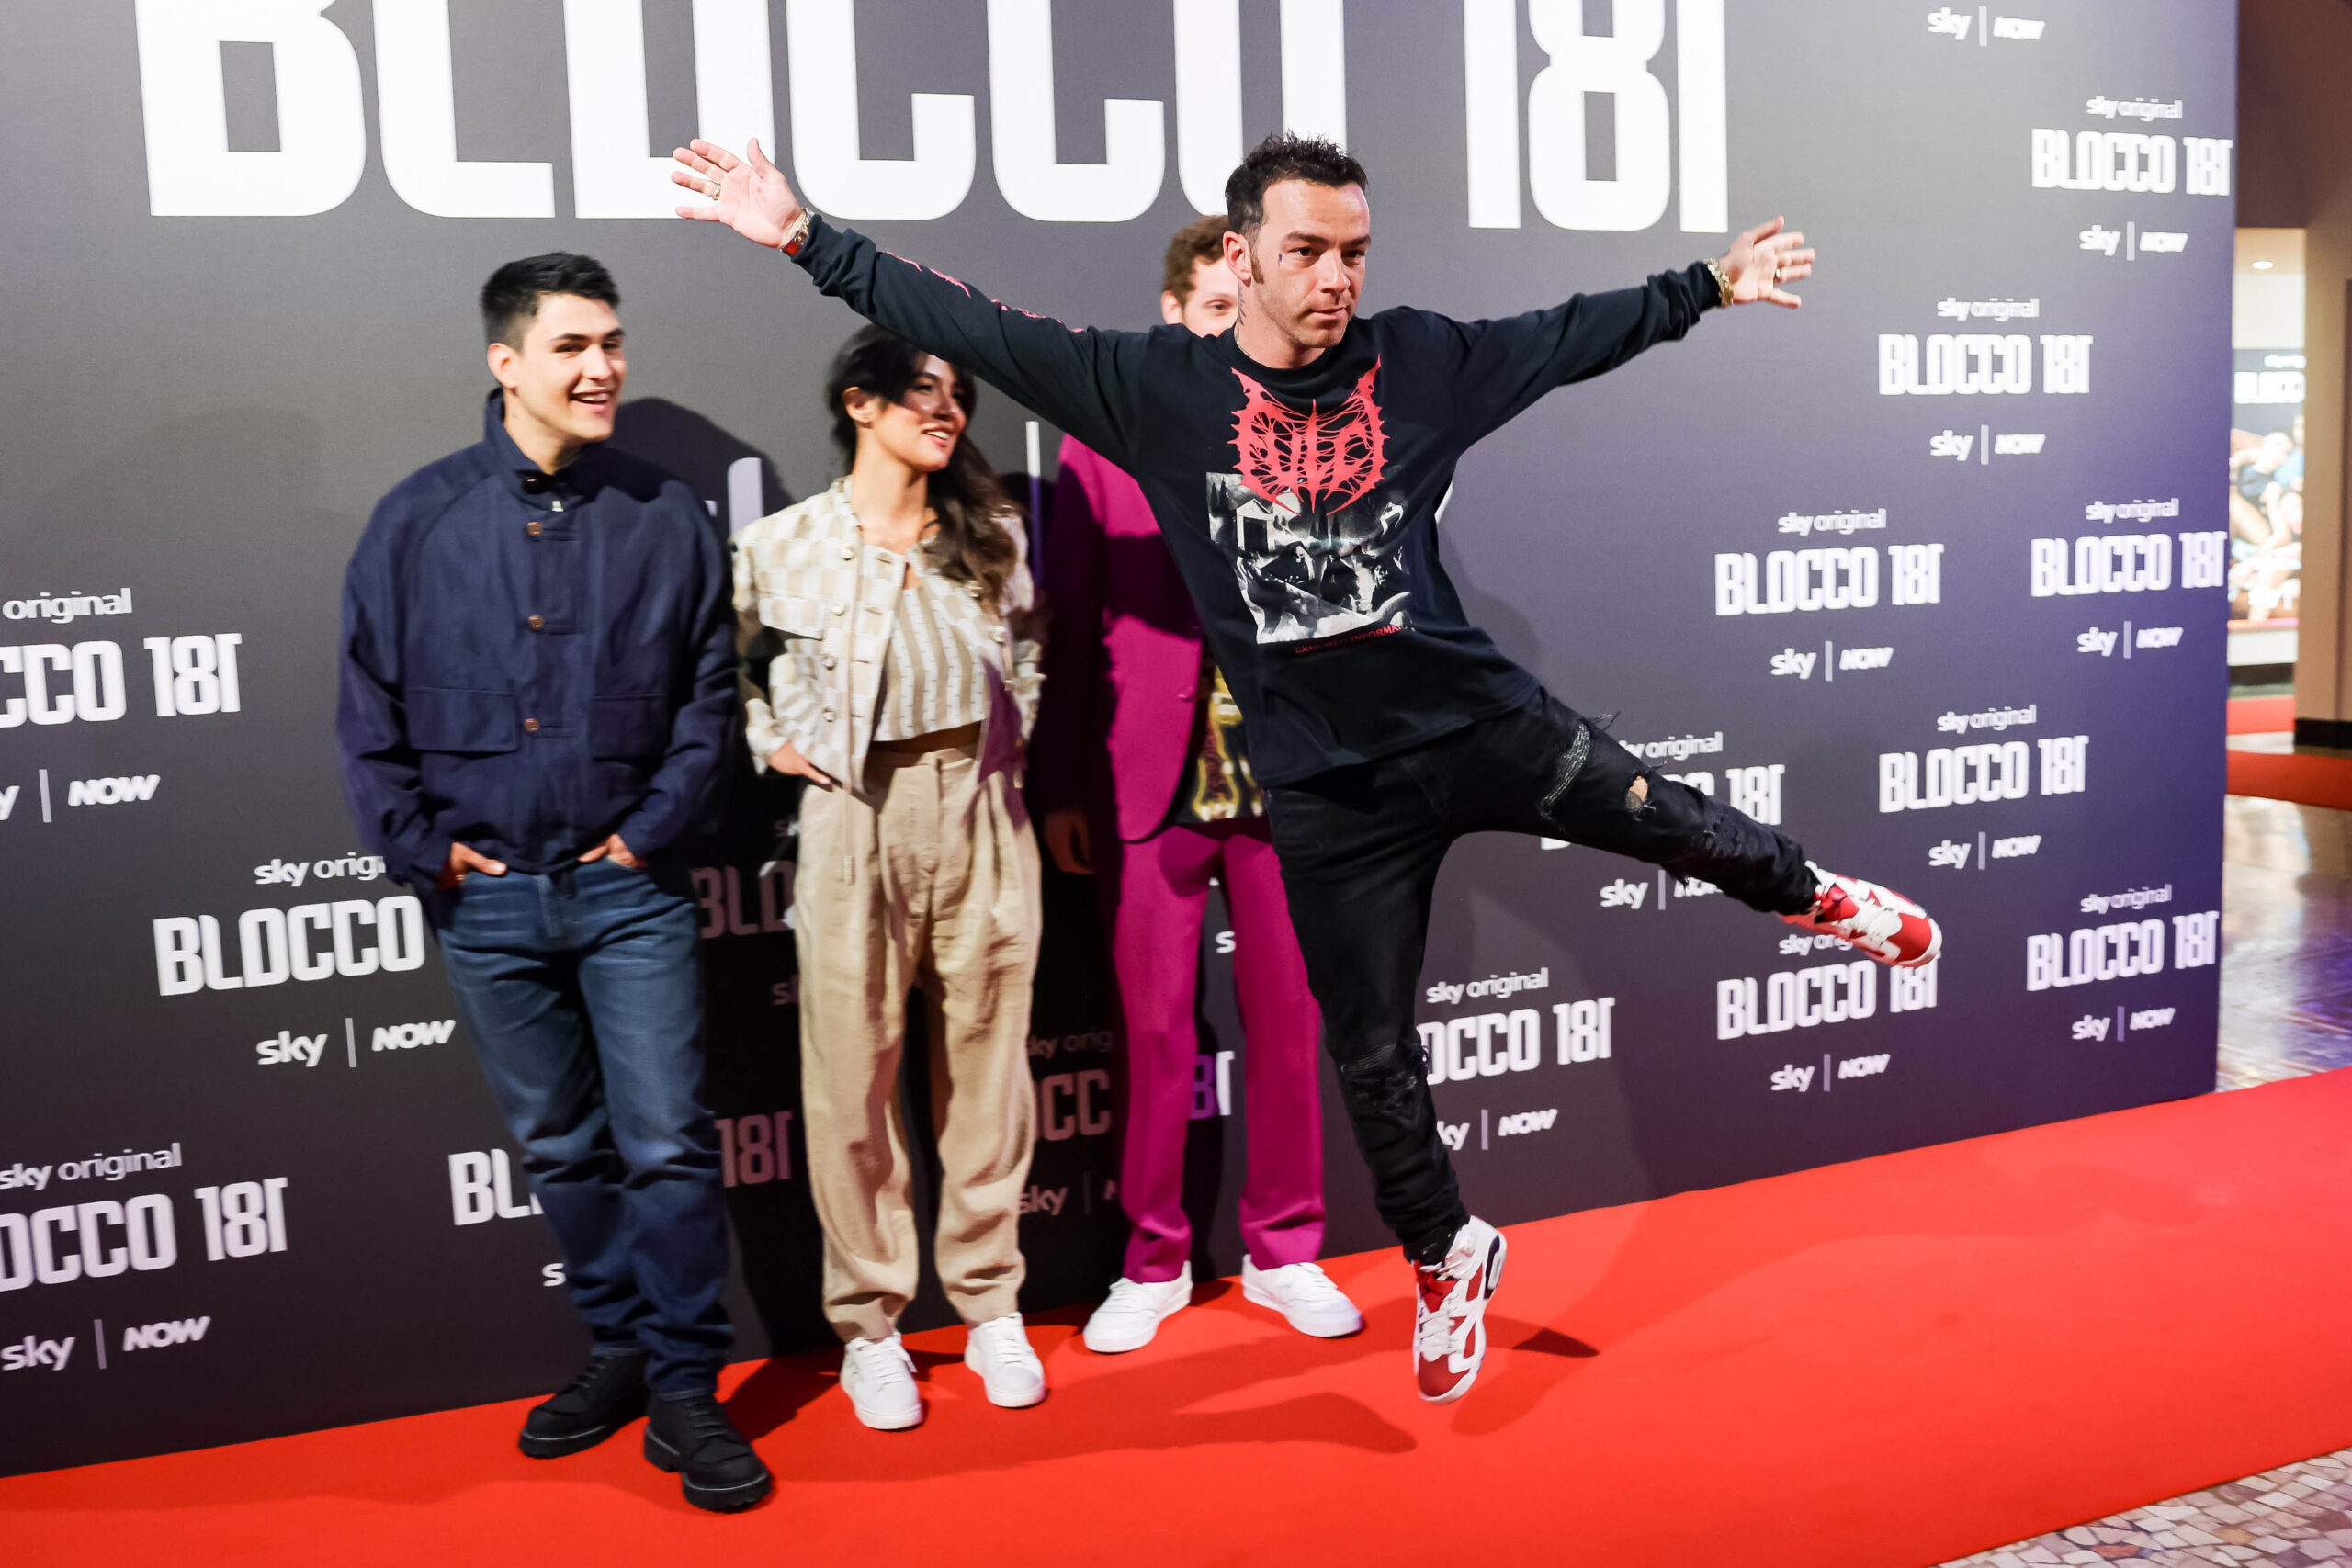 “Blocco 181”, la nuova serie TV ambientata a Milano – FOTOGALLERY